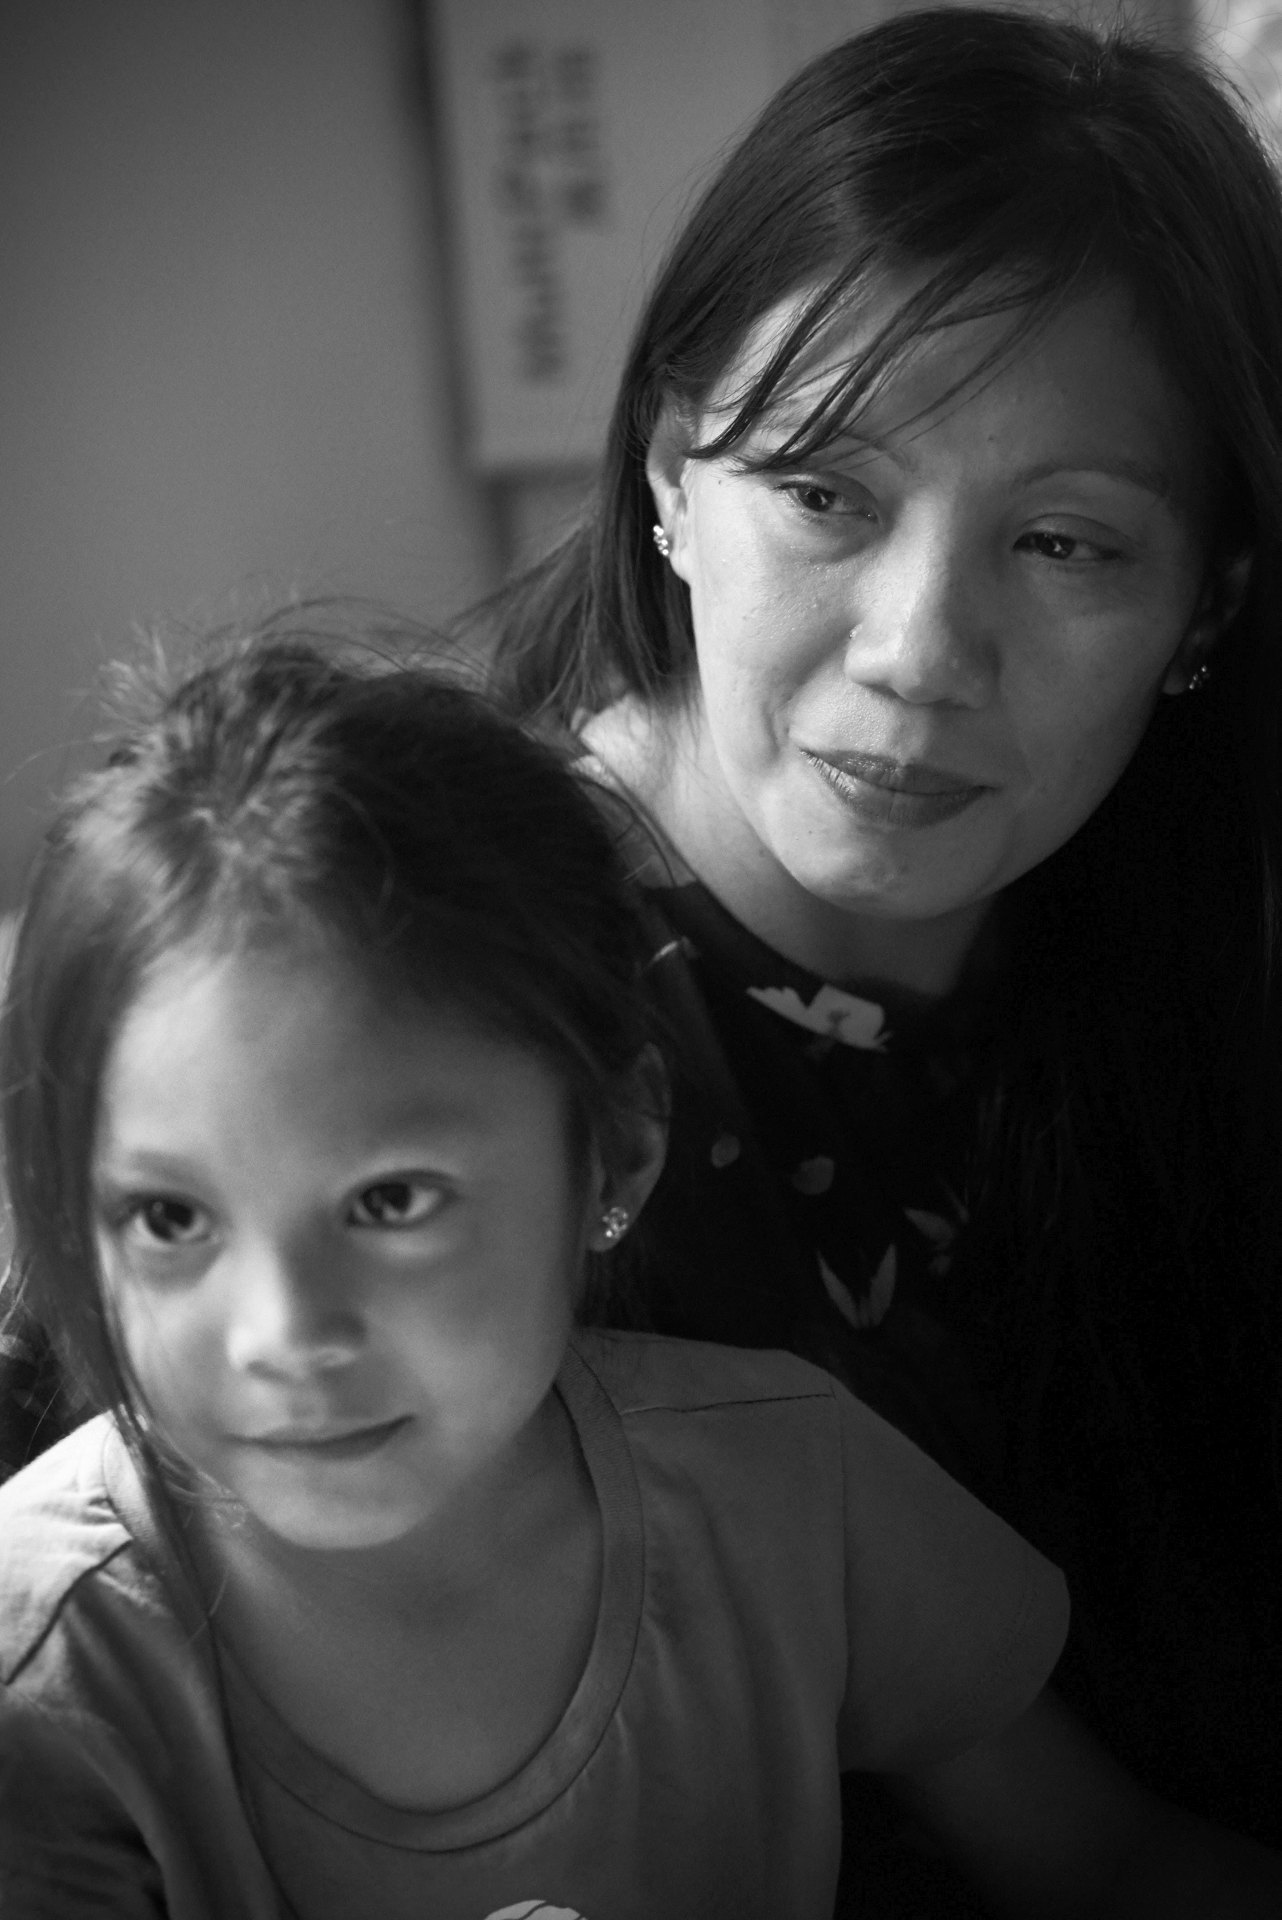 Vanessa and her daughter Keana